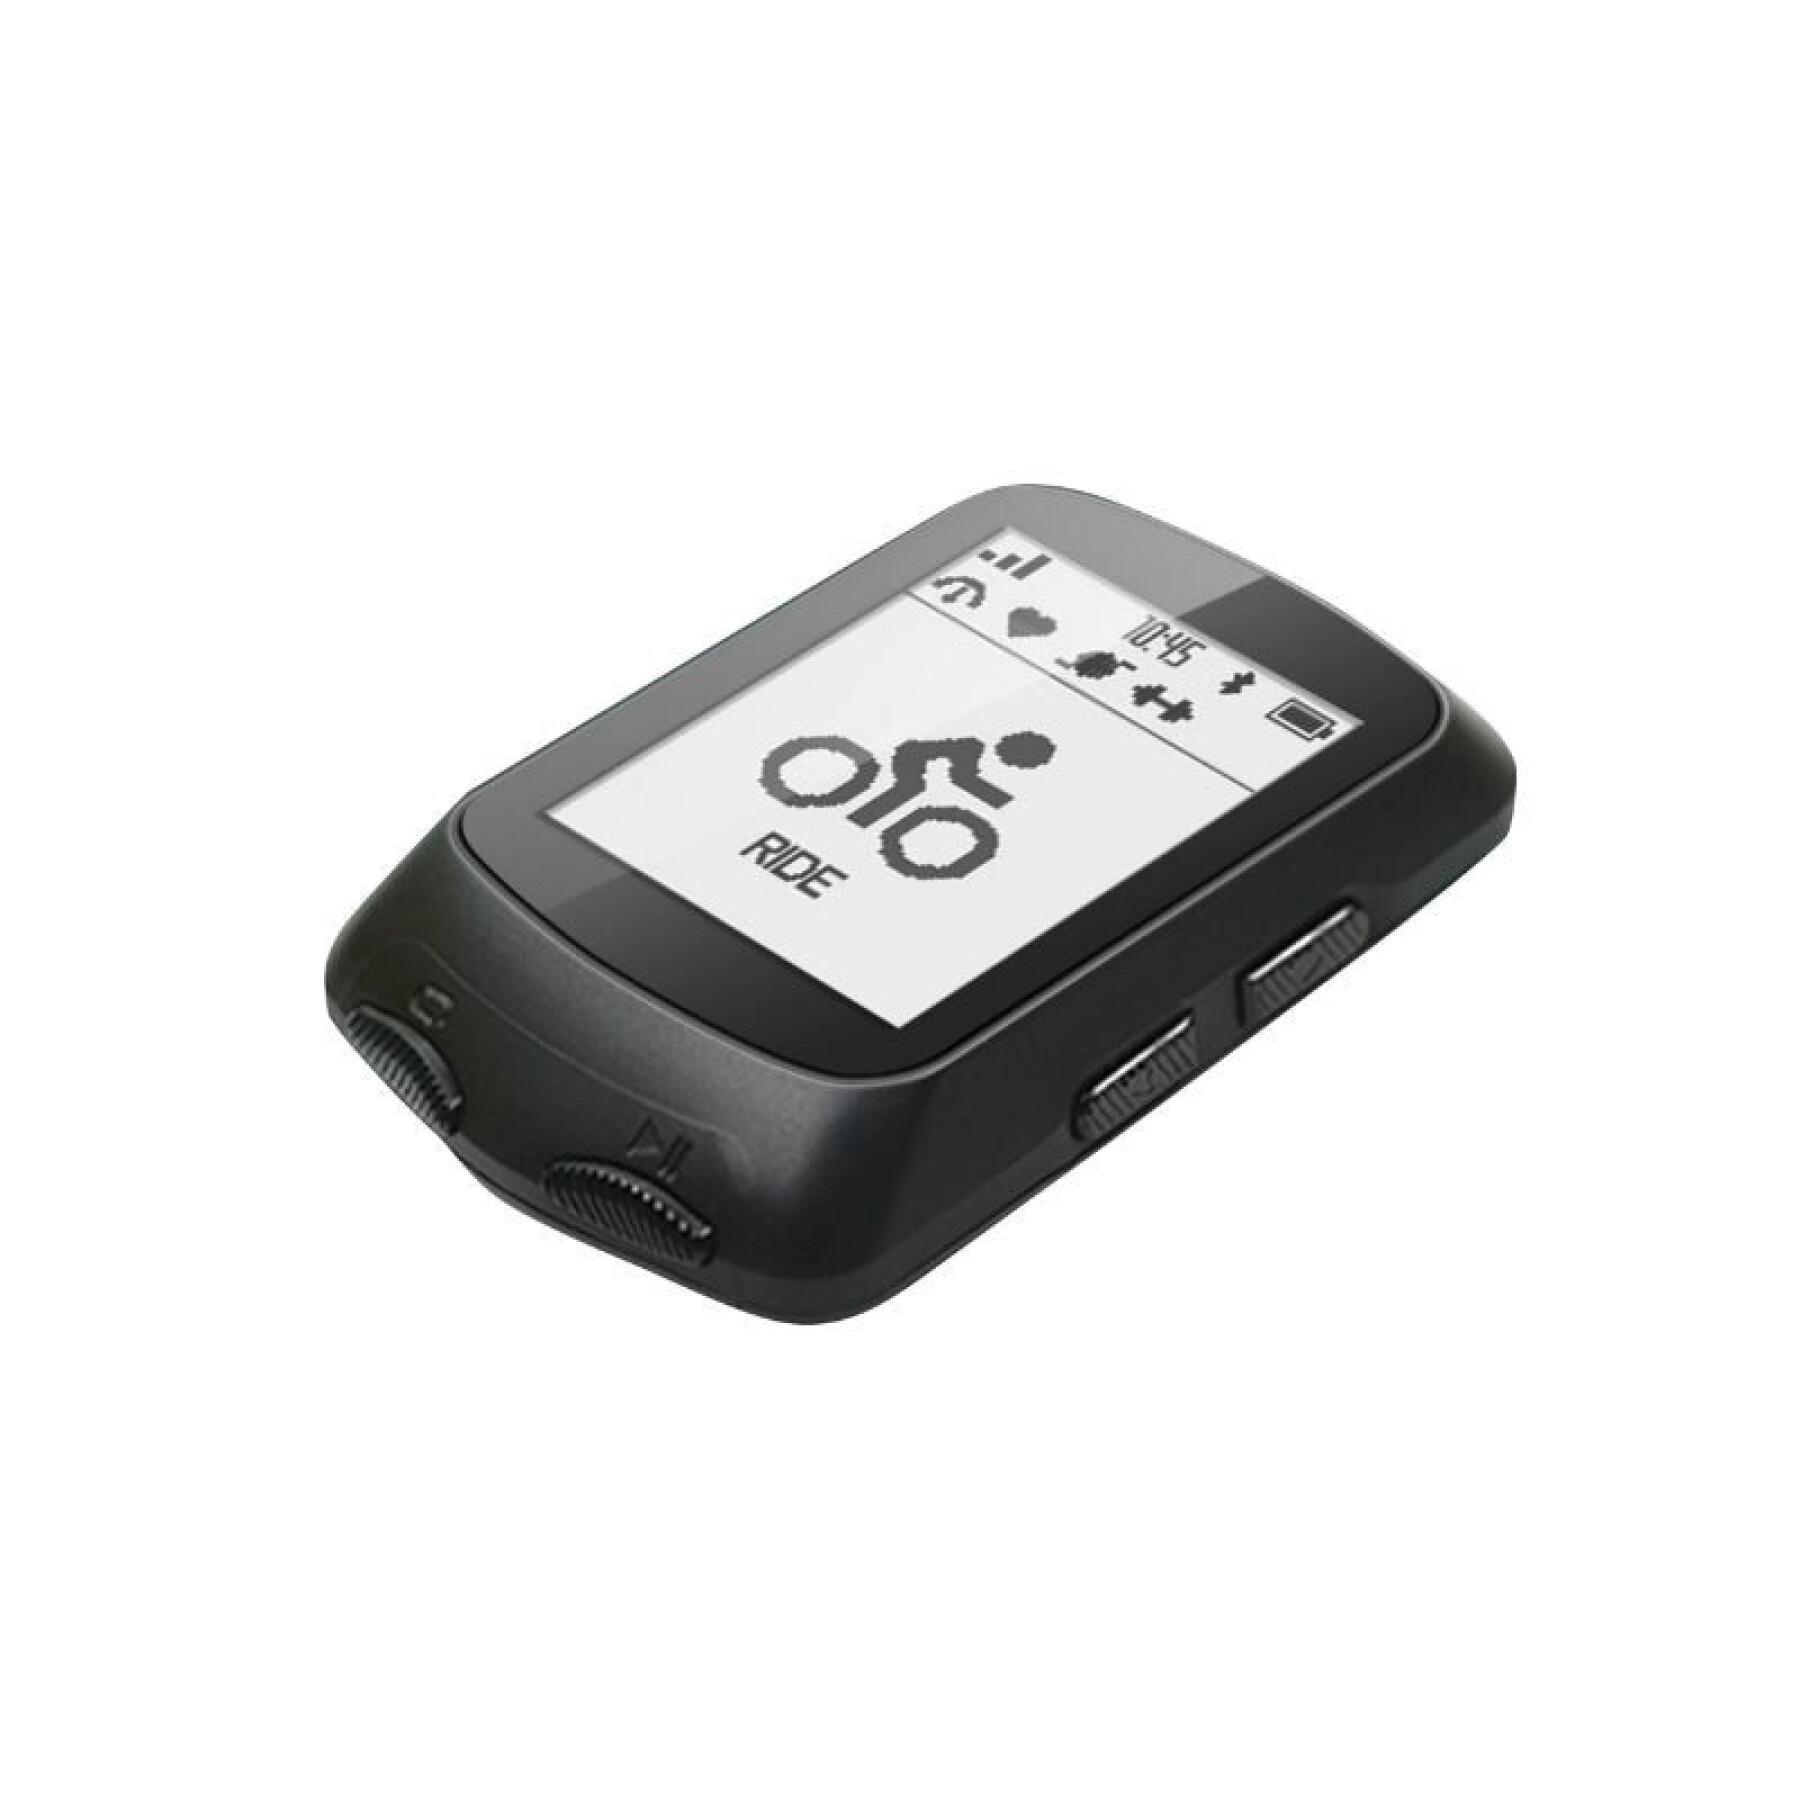 Gps - velocímetro con velocidad, altímetro, temperatura, compatible con strava - opción: sensor de cadencia, velocidad y cardio Igpsport